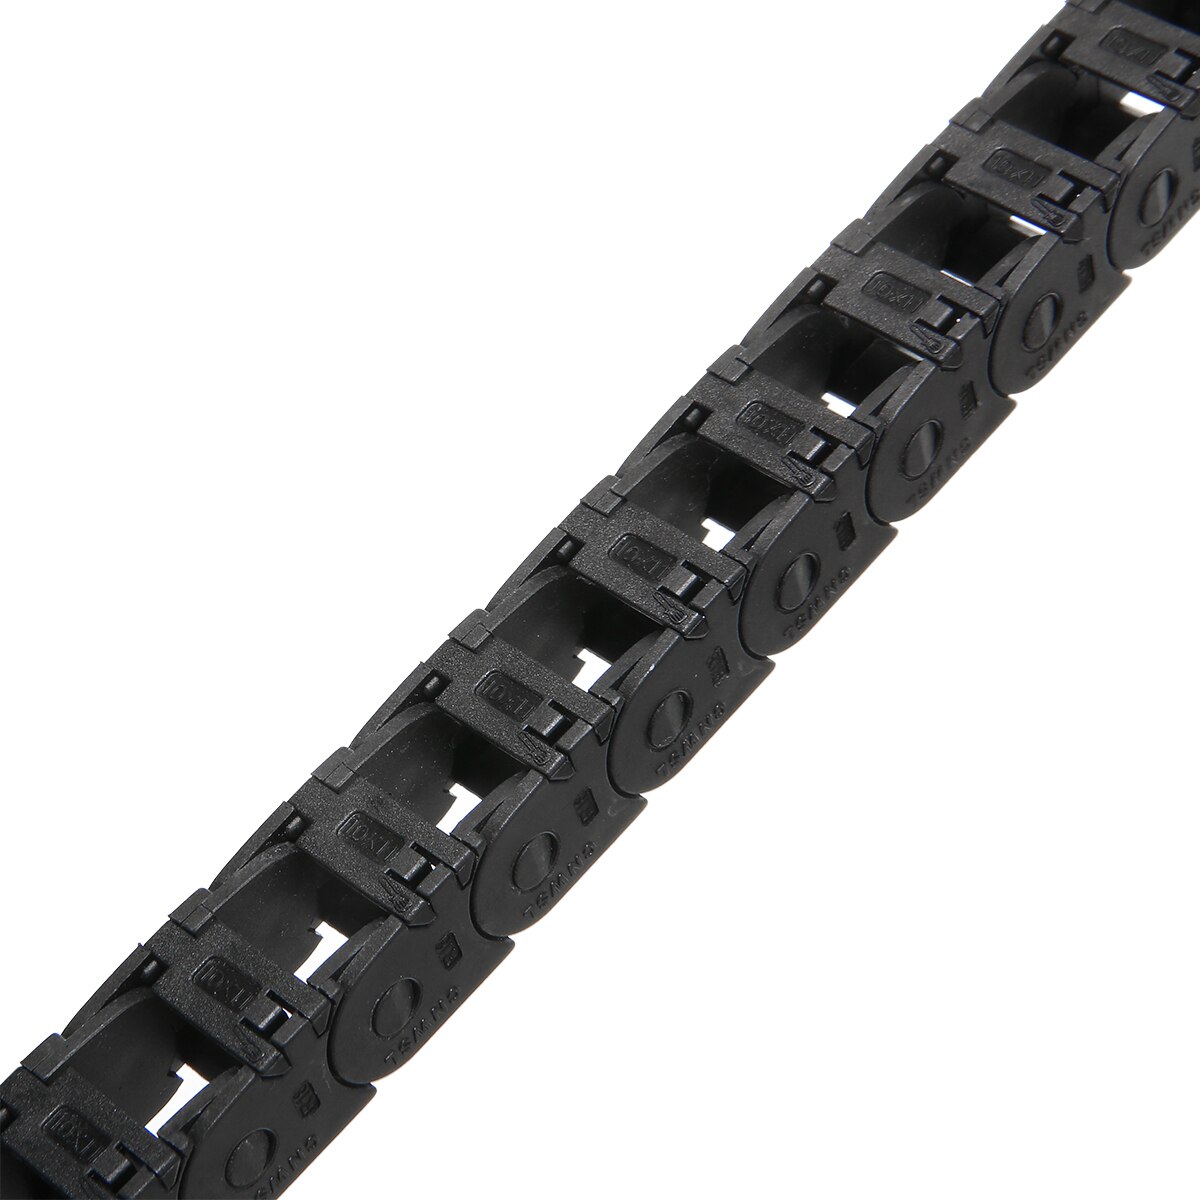 Sort mini energikæde 10*11mm nylon træk kæde 3d printer tank kædelængde 1m lang til cnc værktøjsmaskine